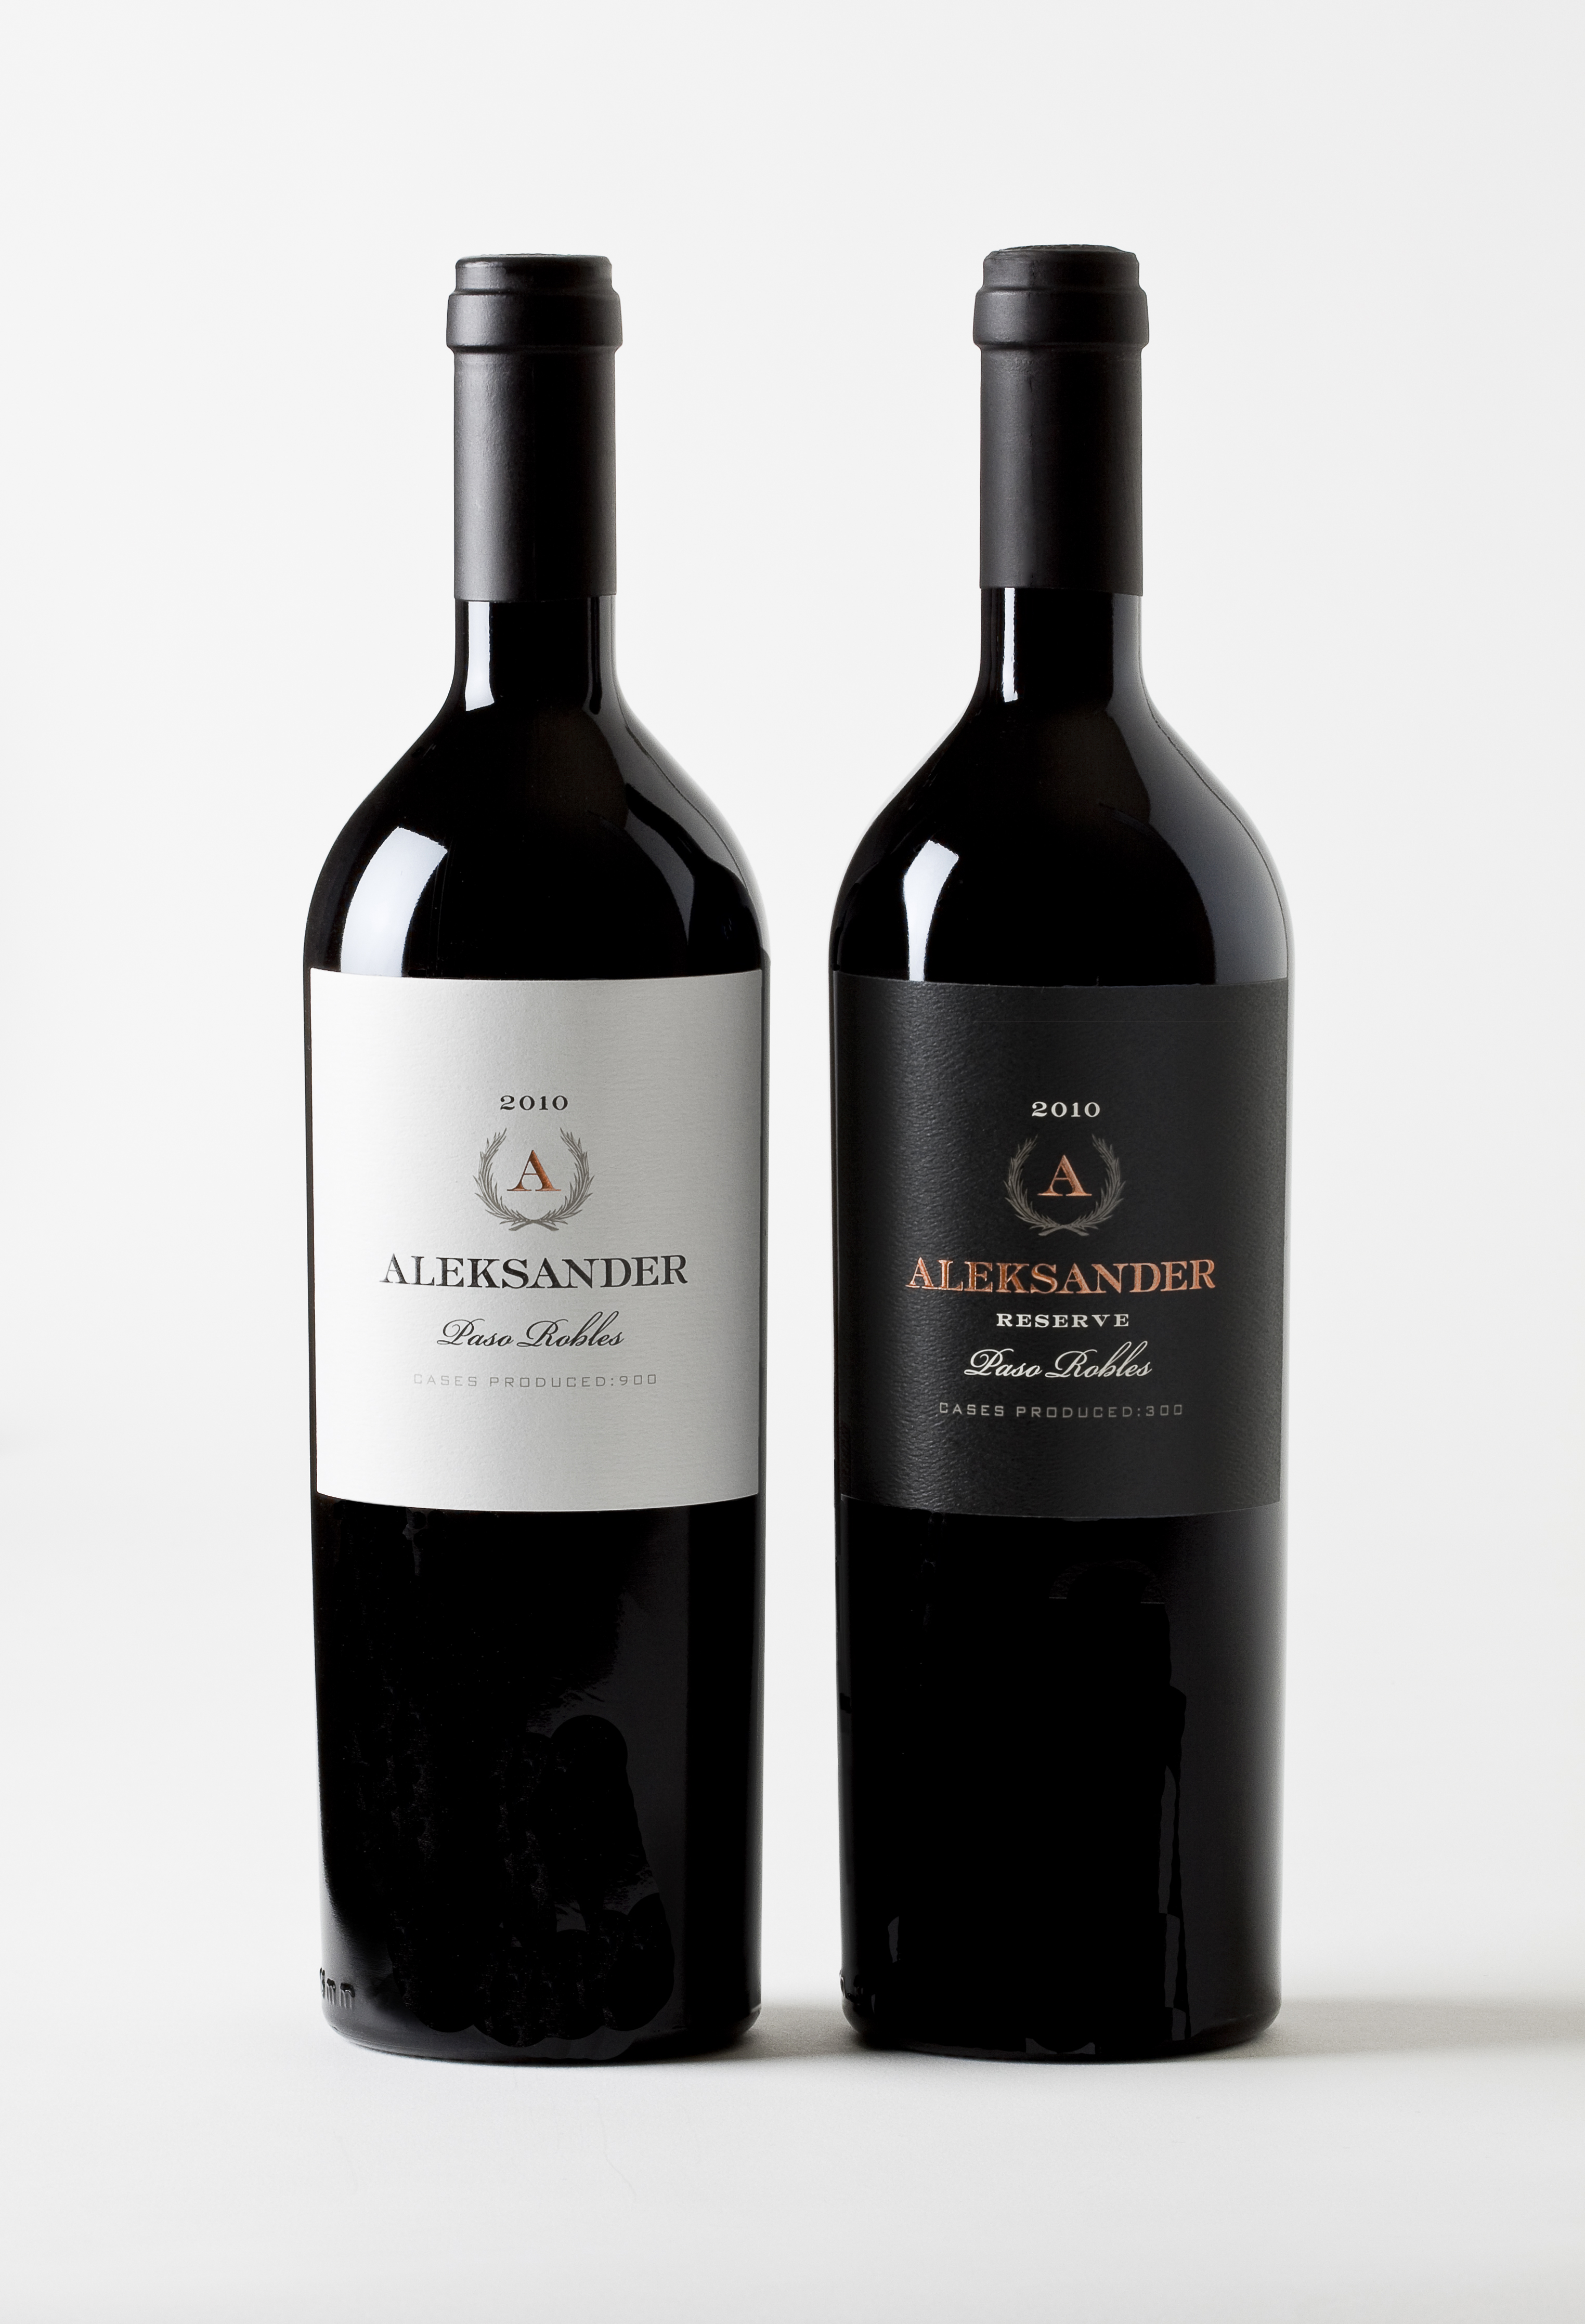 Aleksander Wine - Bottle Shots